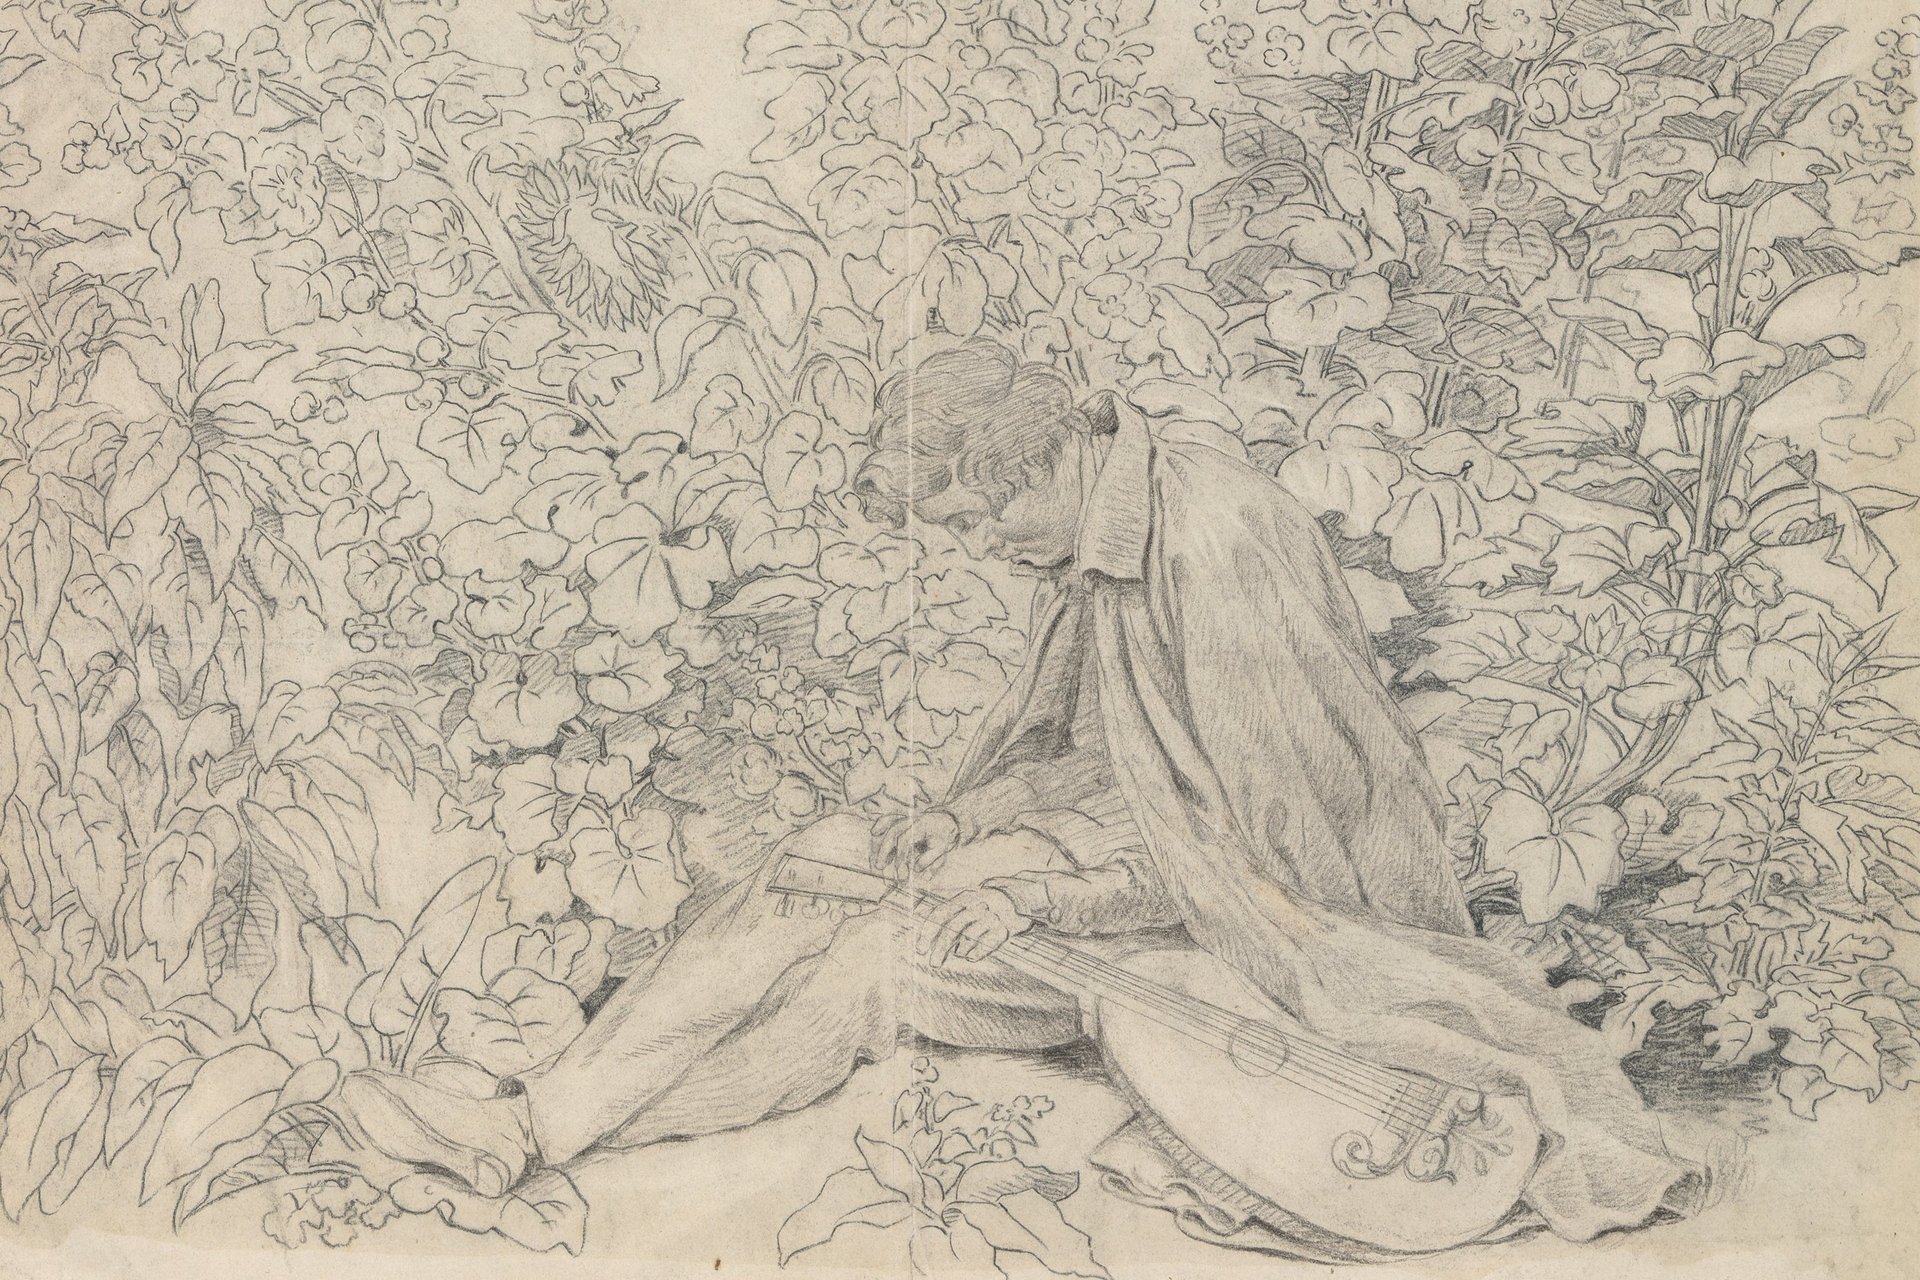 Zeichnung eines auf dem Boden sitzenden Mannes mit Laute neben sich im Gebüsch. Darüber zum Himmel aufsteigende Engel.